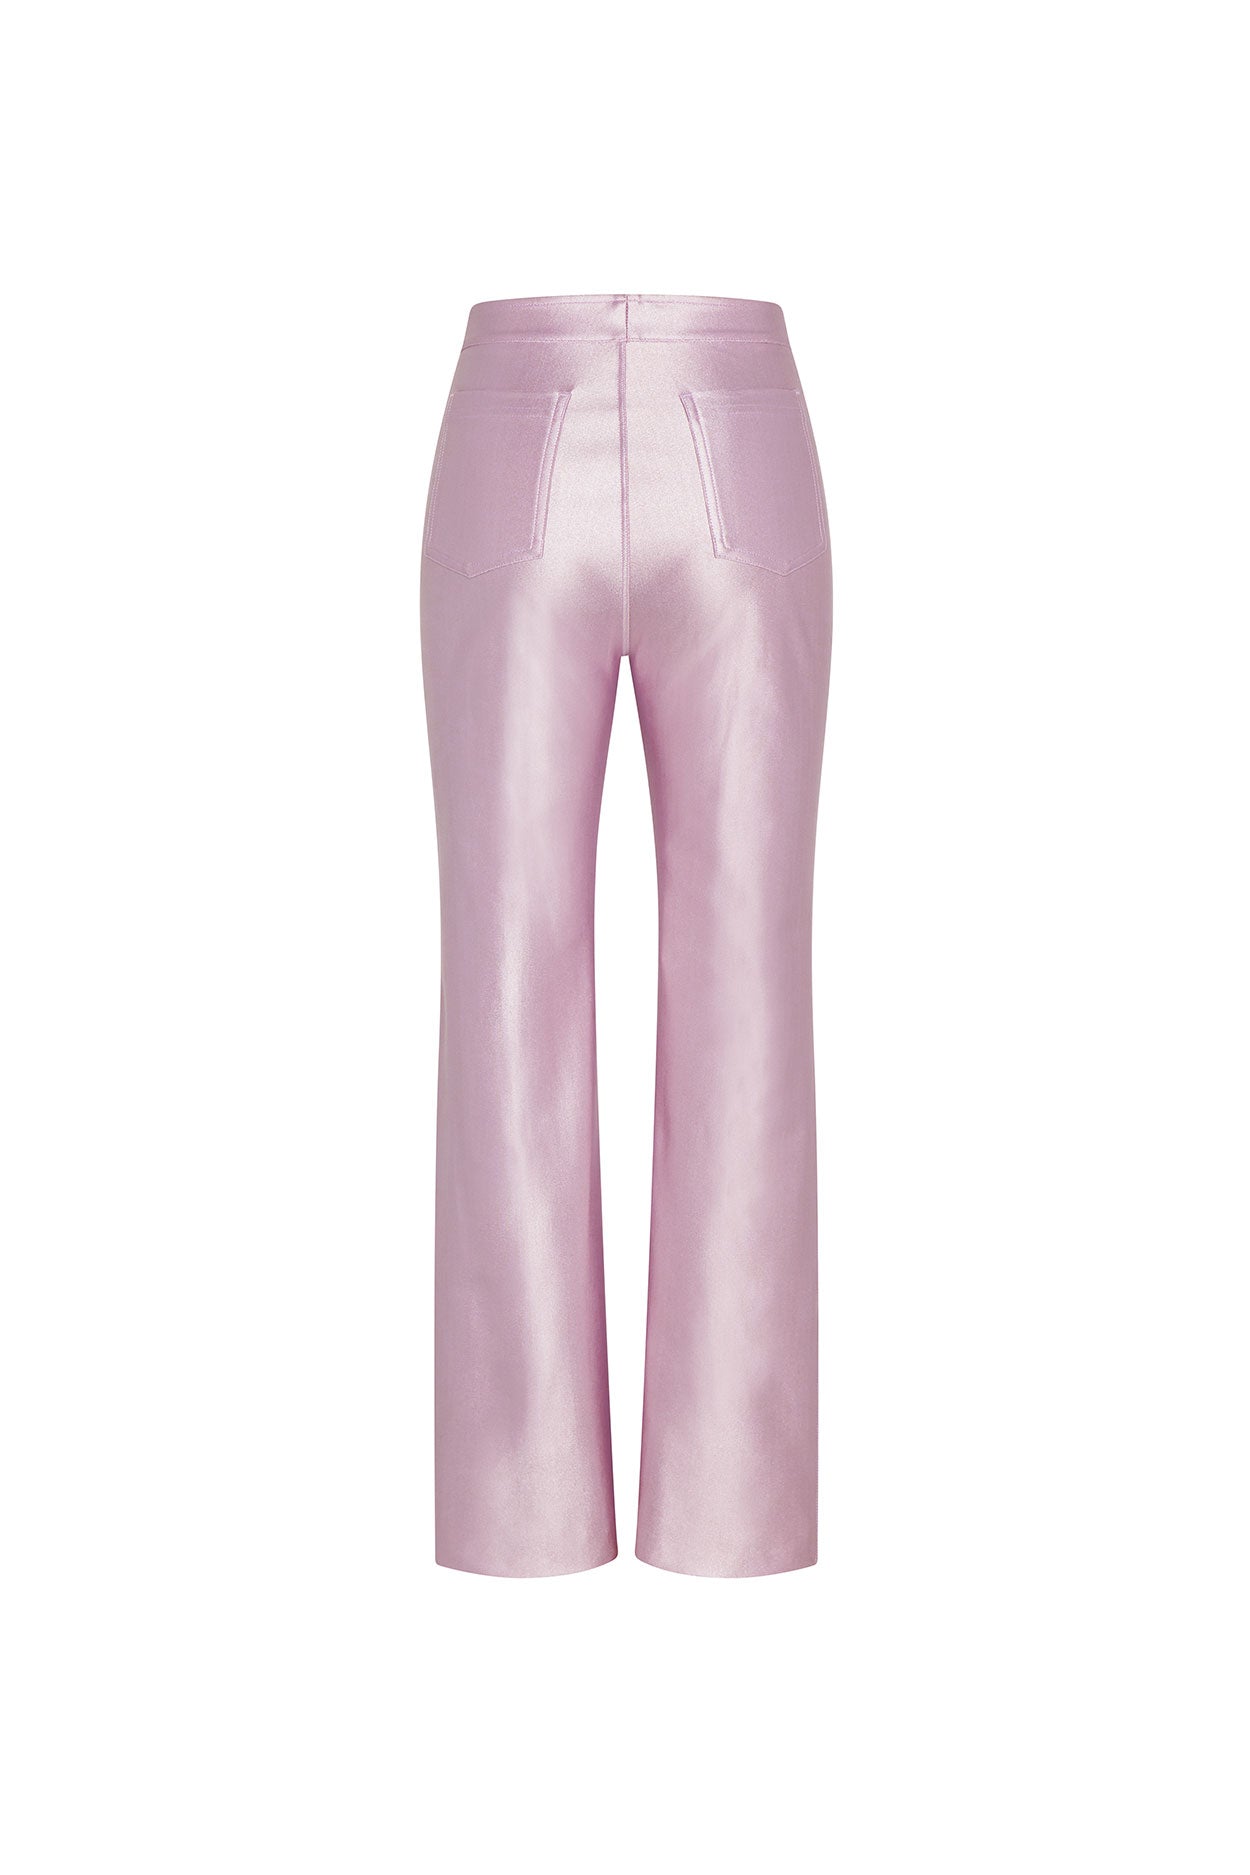 日本の人気ファッション LEGENDA 新品未使用Rose Fleese Pants - パンツ